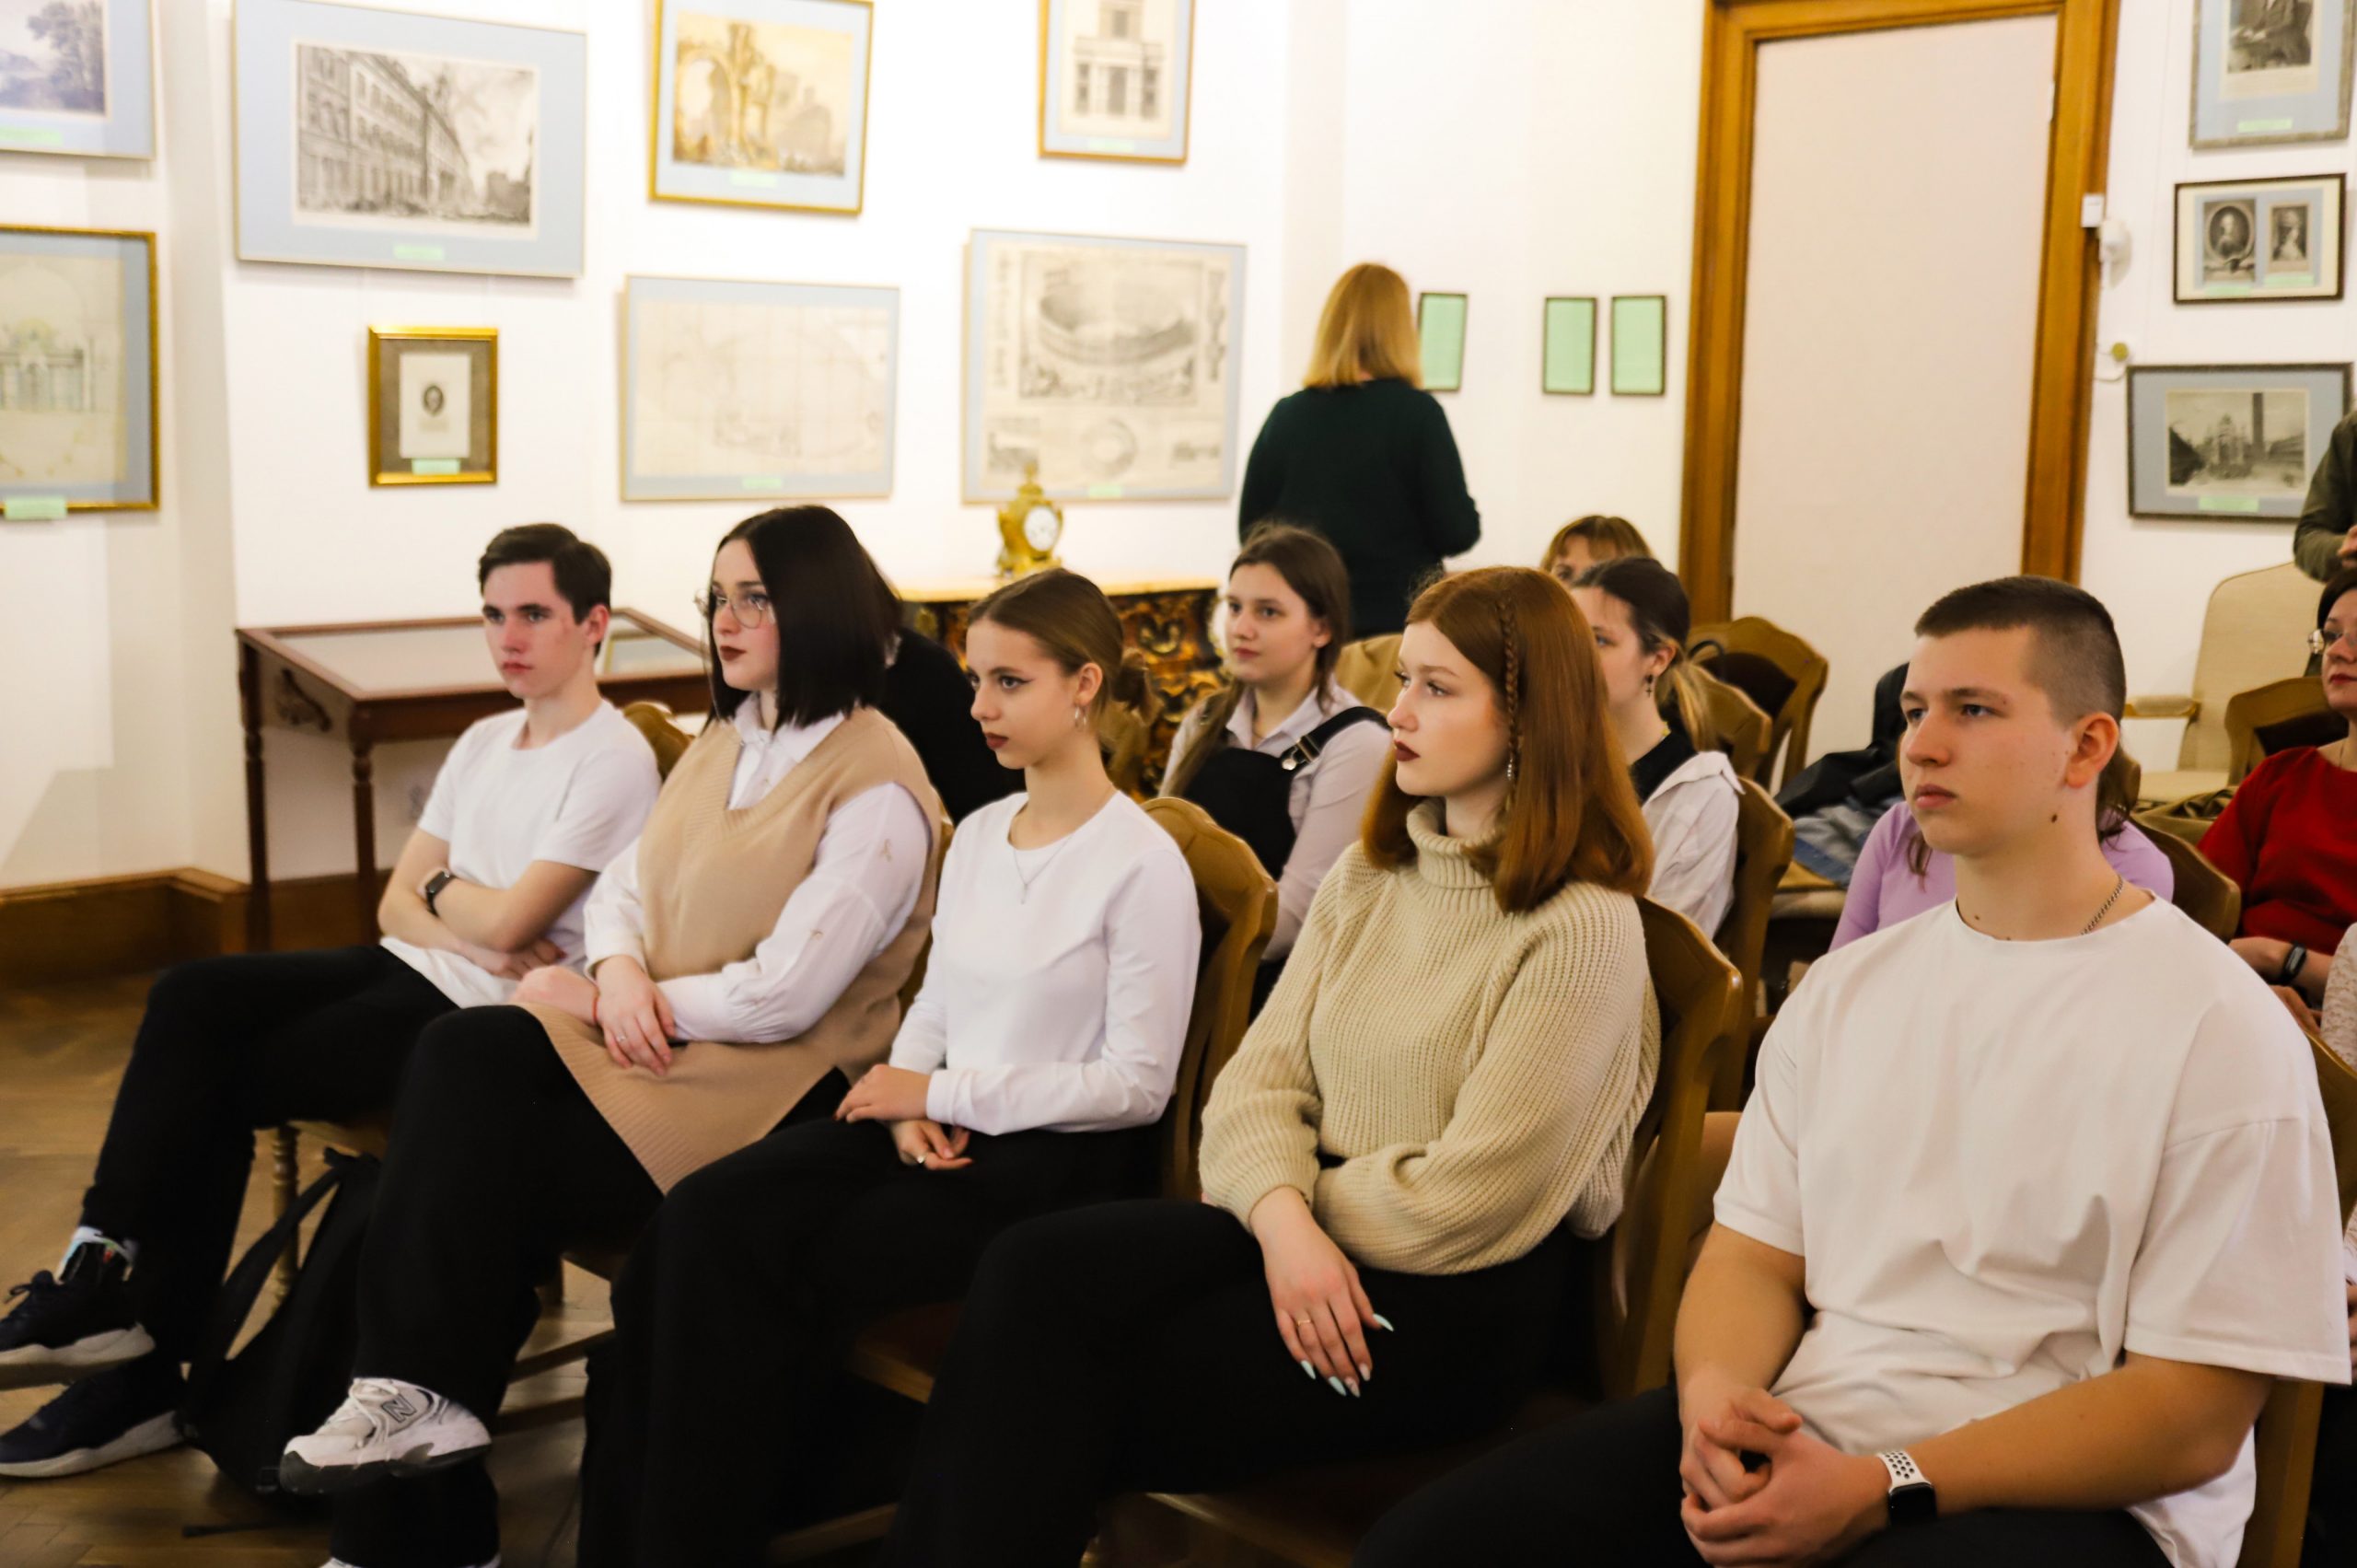 Подробнее о статье Интегрированный музейный урок состоялся в Воронцовском дворце